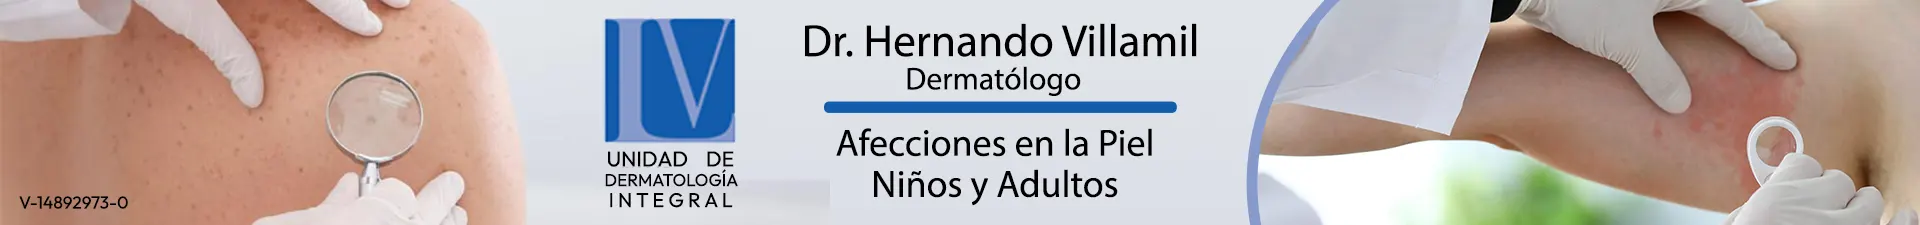 Imagen 1 del perfil de Dr. Hernando Villamil Cely